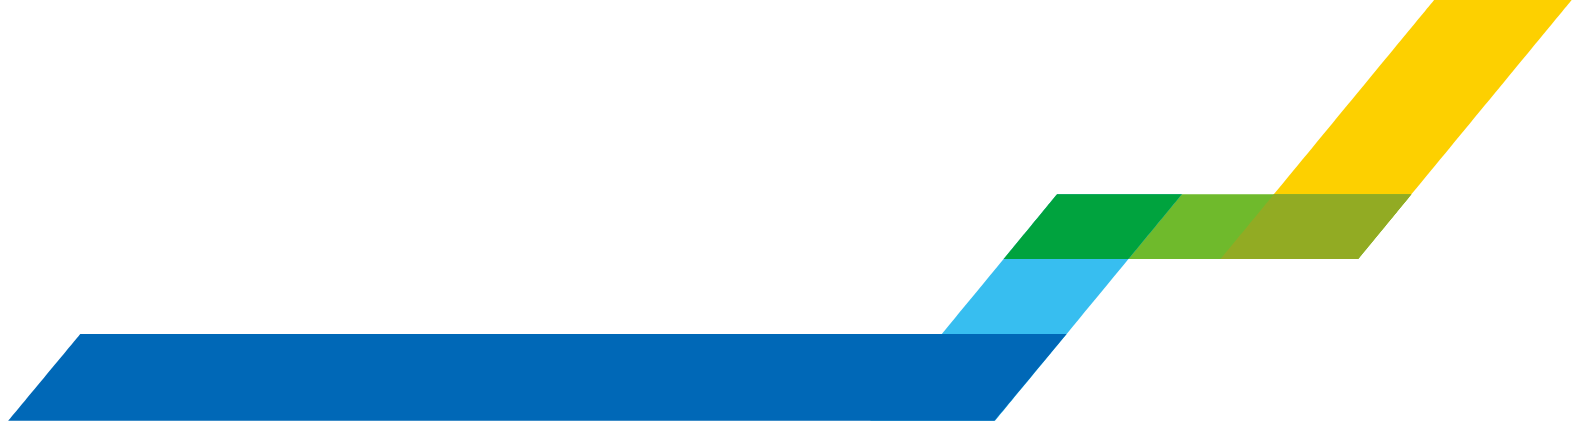 WuXi Biologics logo large for dark backgrounds (transparent PNG)